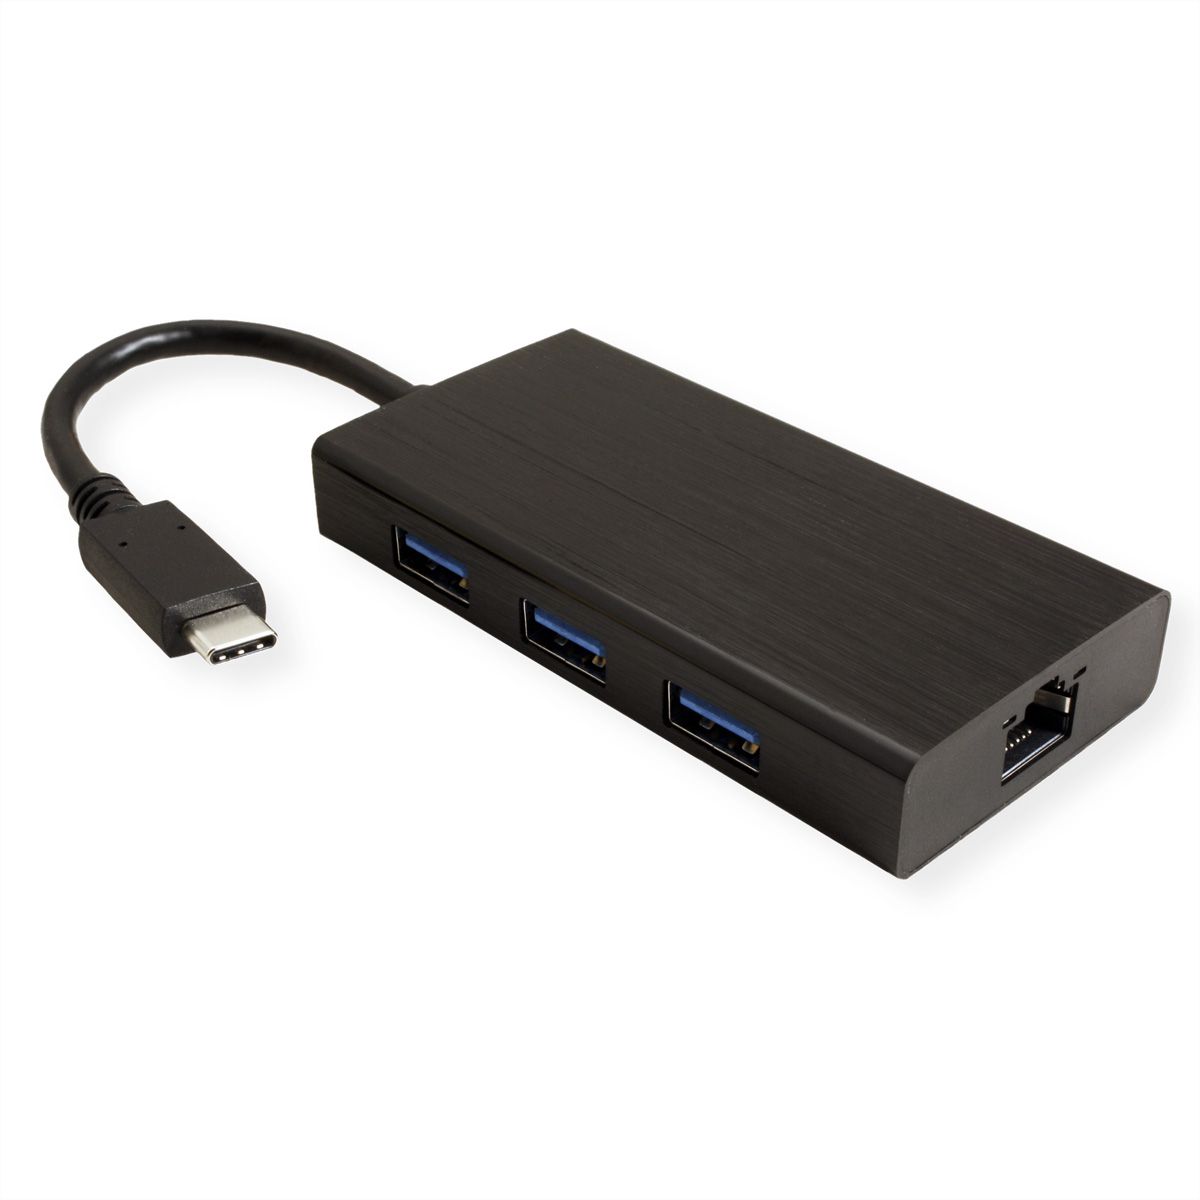 Adaptateur ethernet USB C - Version : 3.2 Gen 1x1 Connexion 1